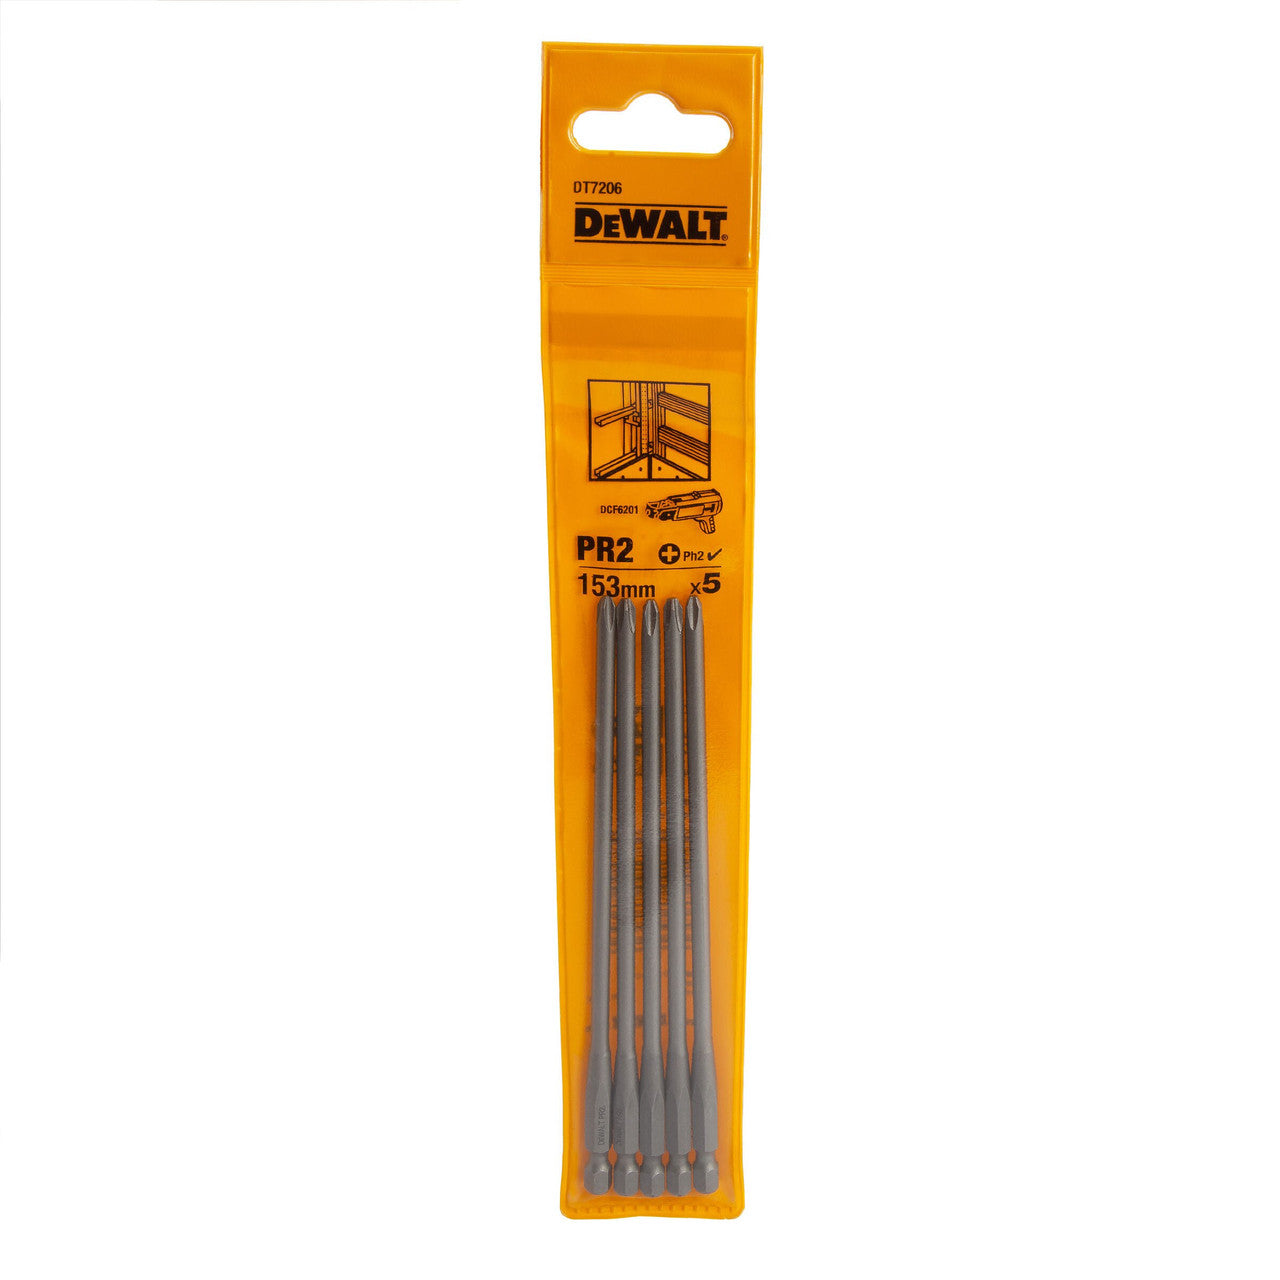 Dewalt DT7206 PR2 Drywall Screwdriver Bits 153mm (Pack Of 5)